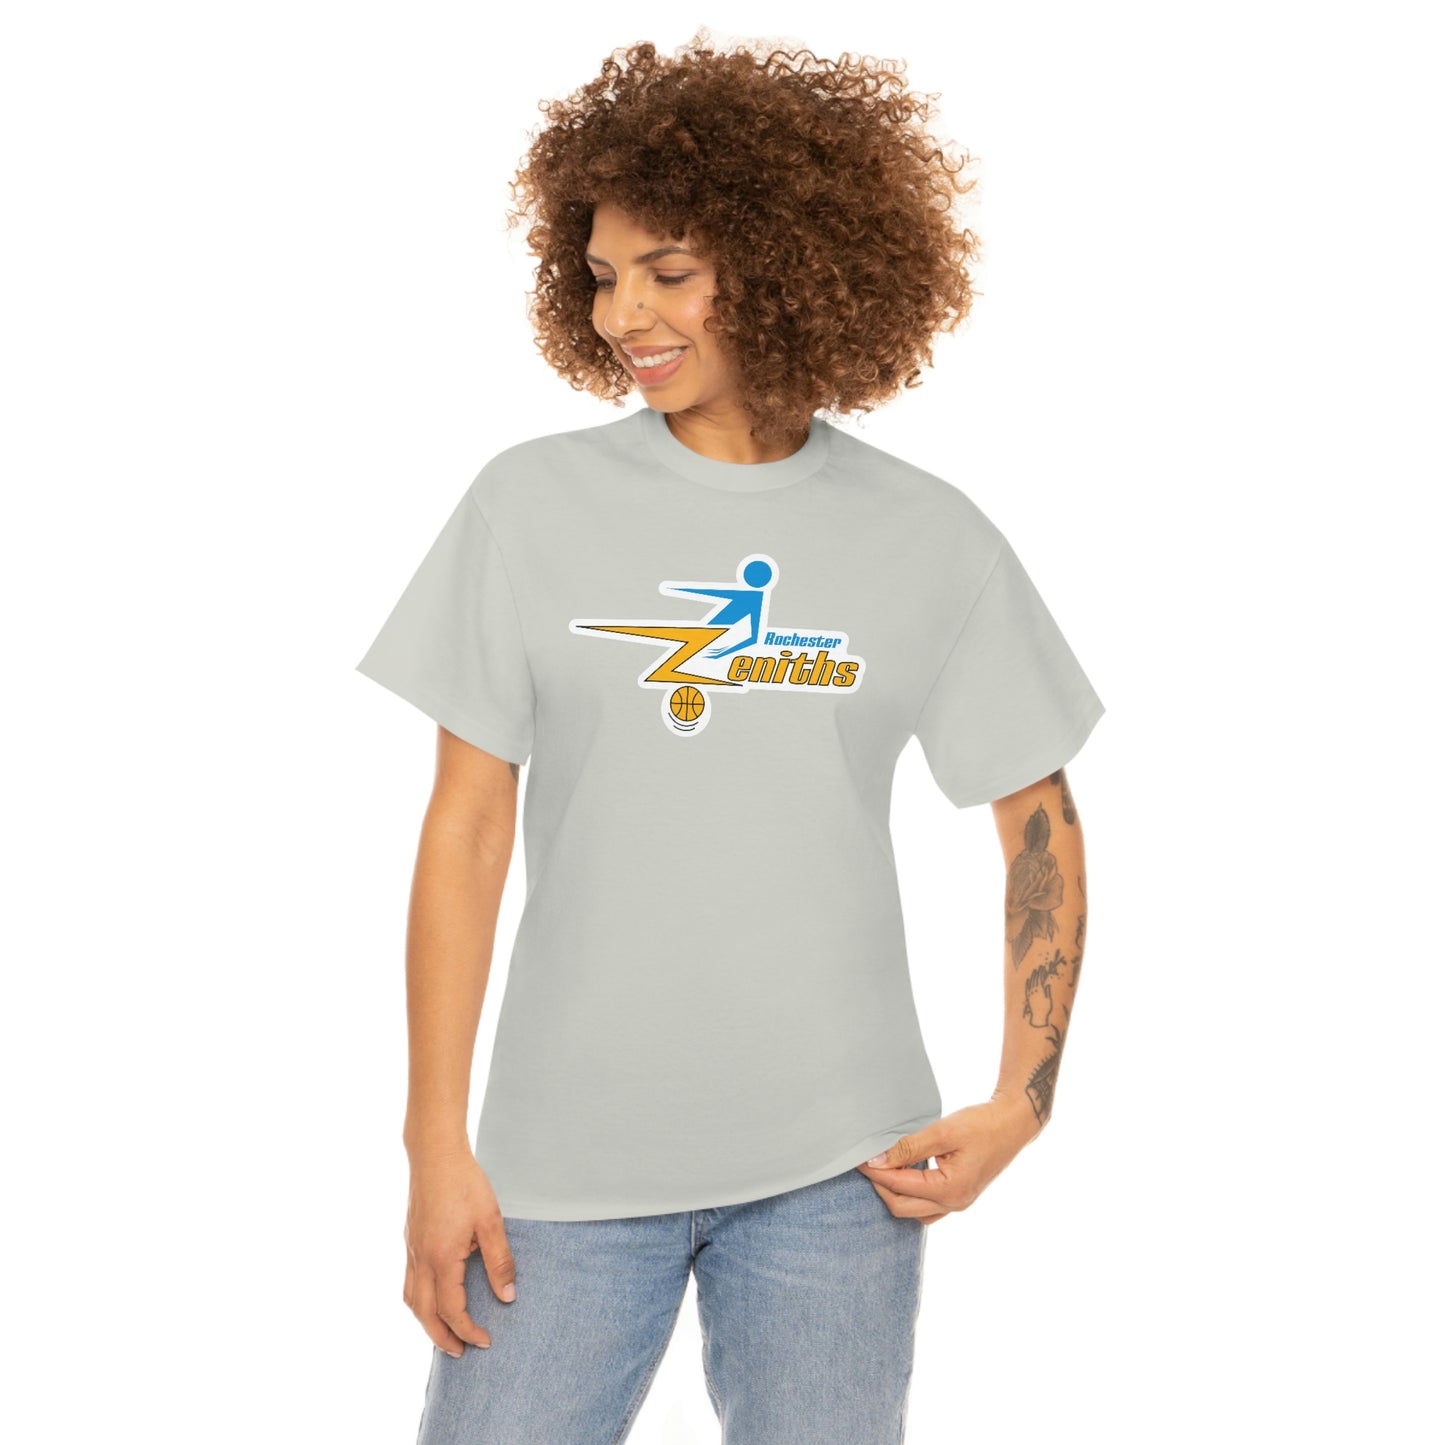 Rochester Zeniths T-Shirt